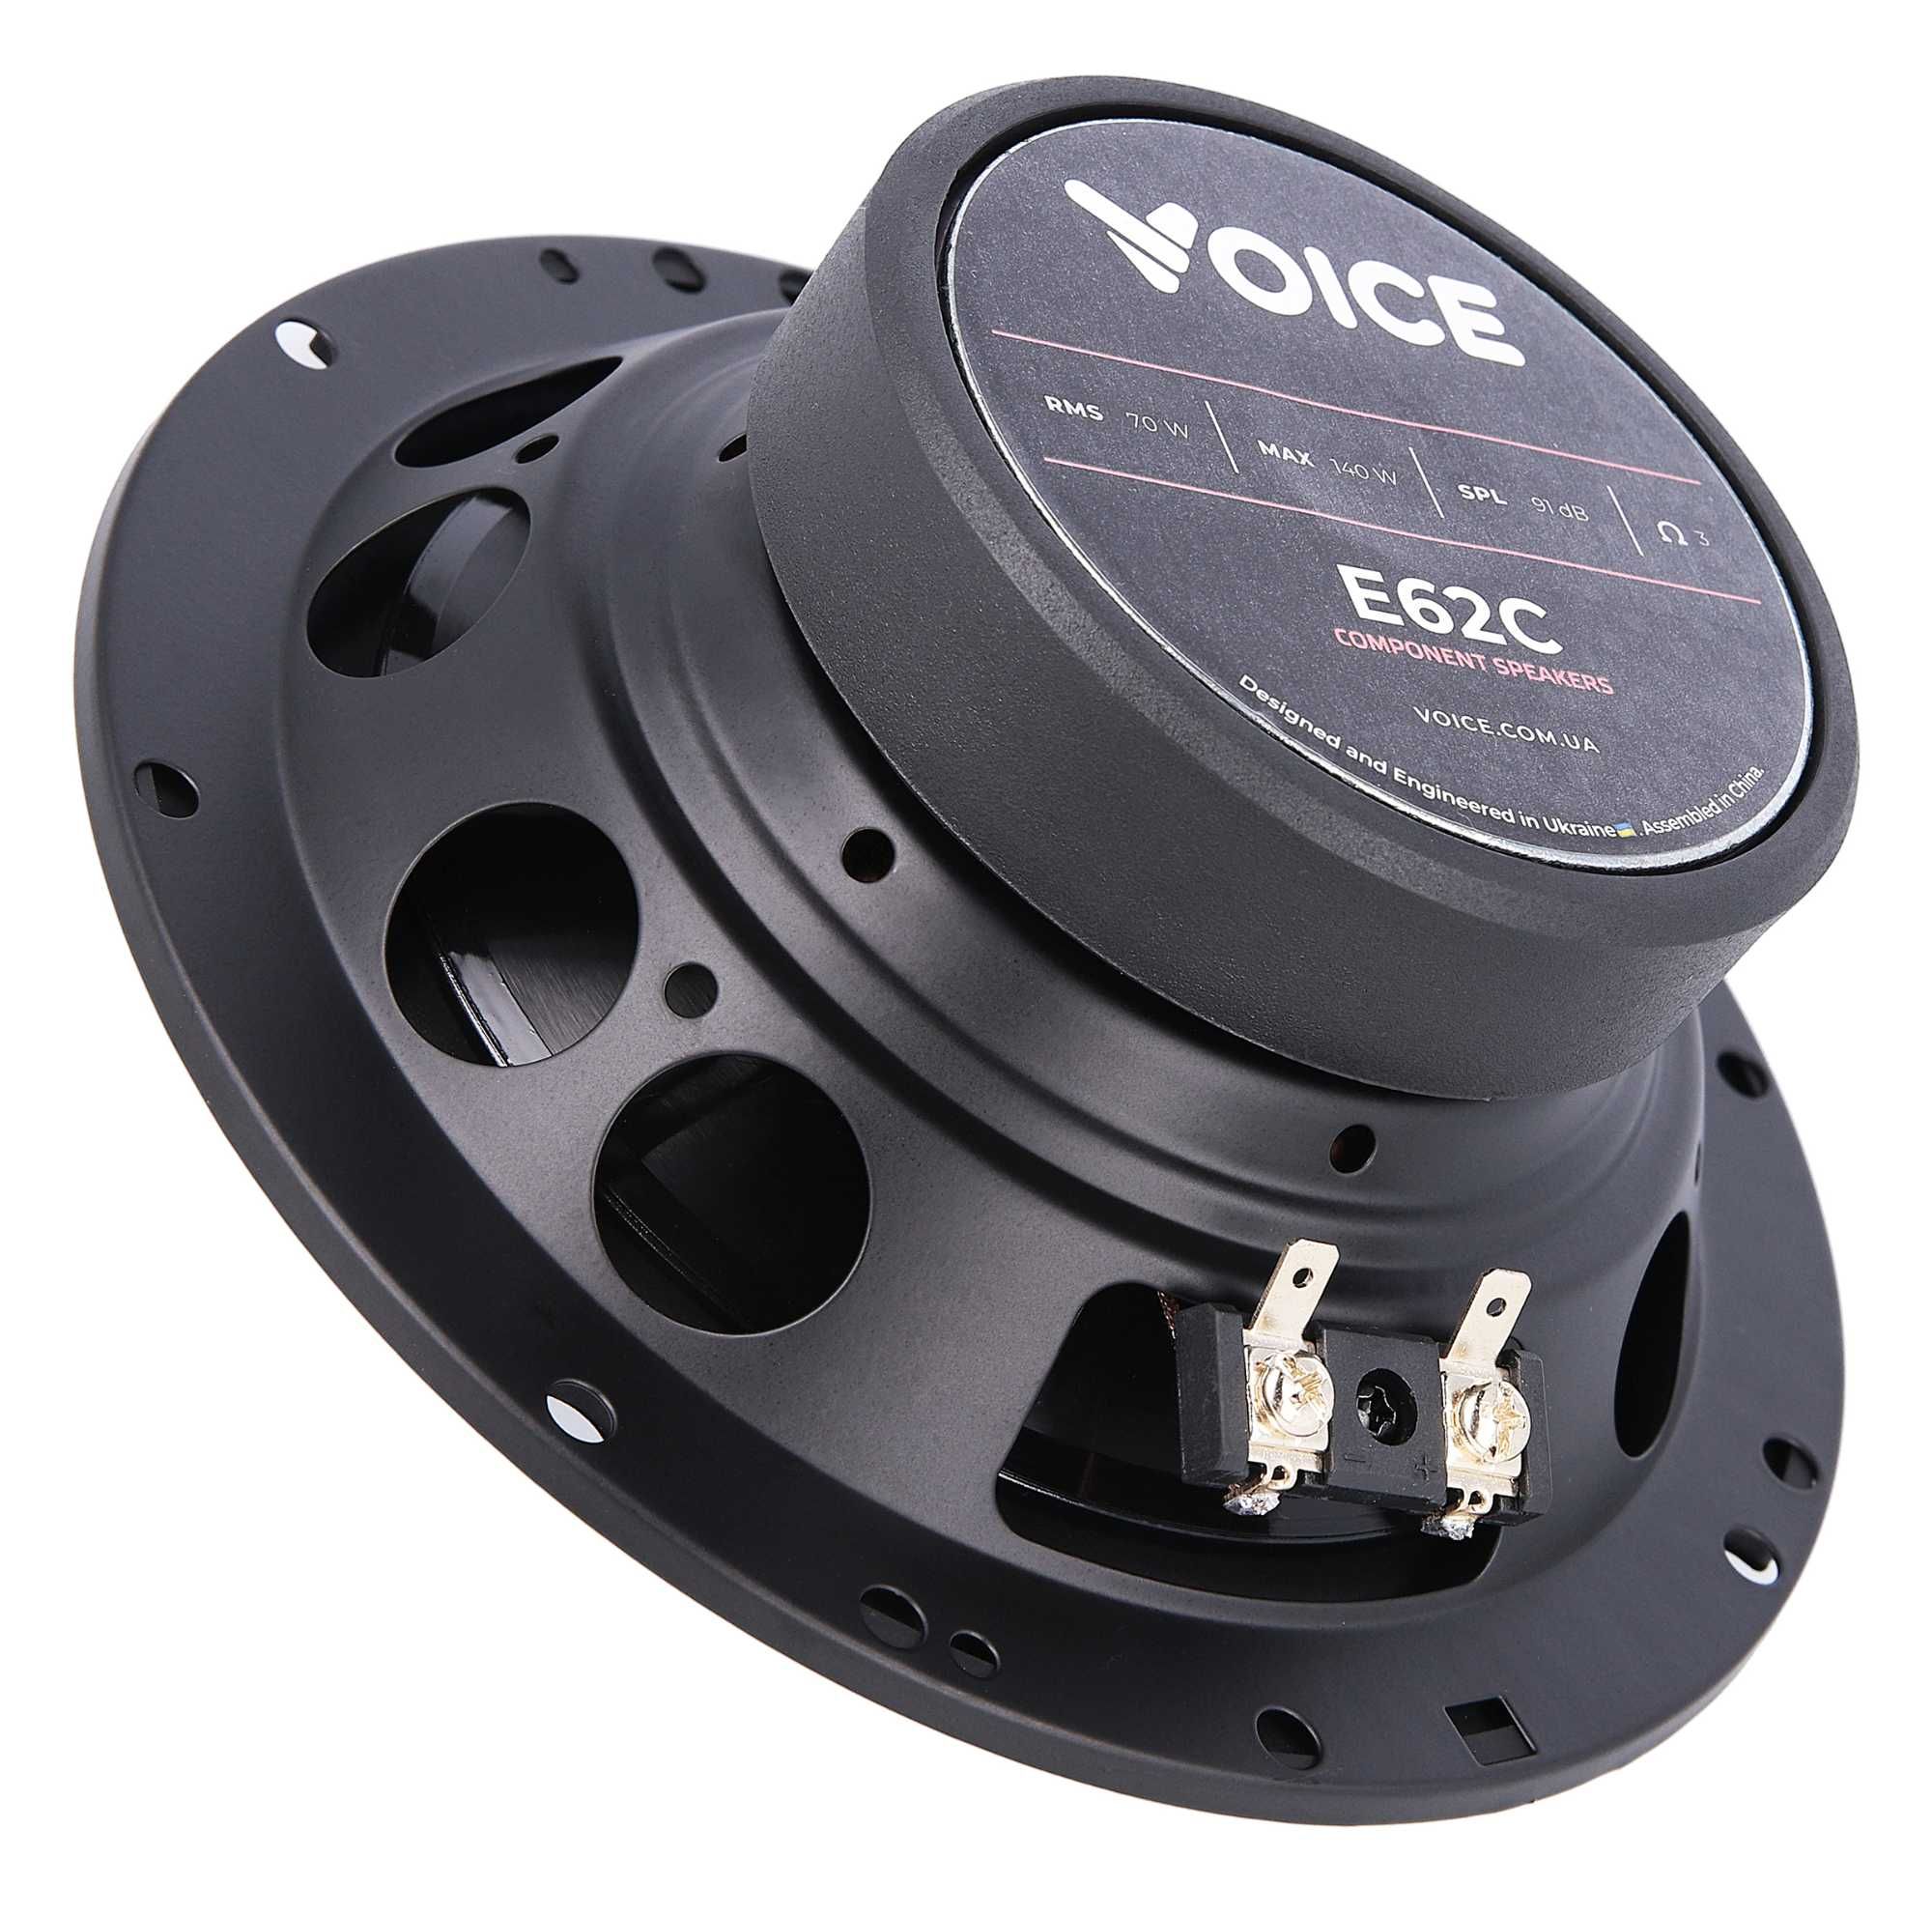 Компонентна акустика Voice E62C (пара)